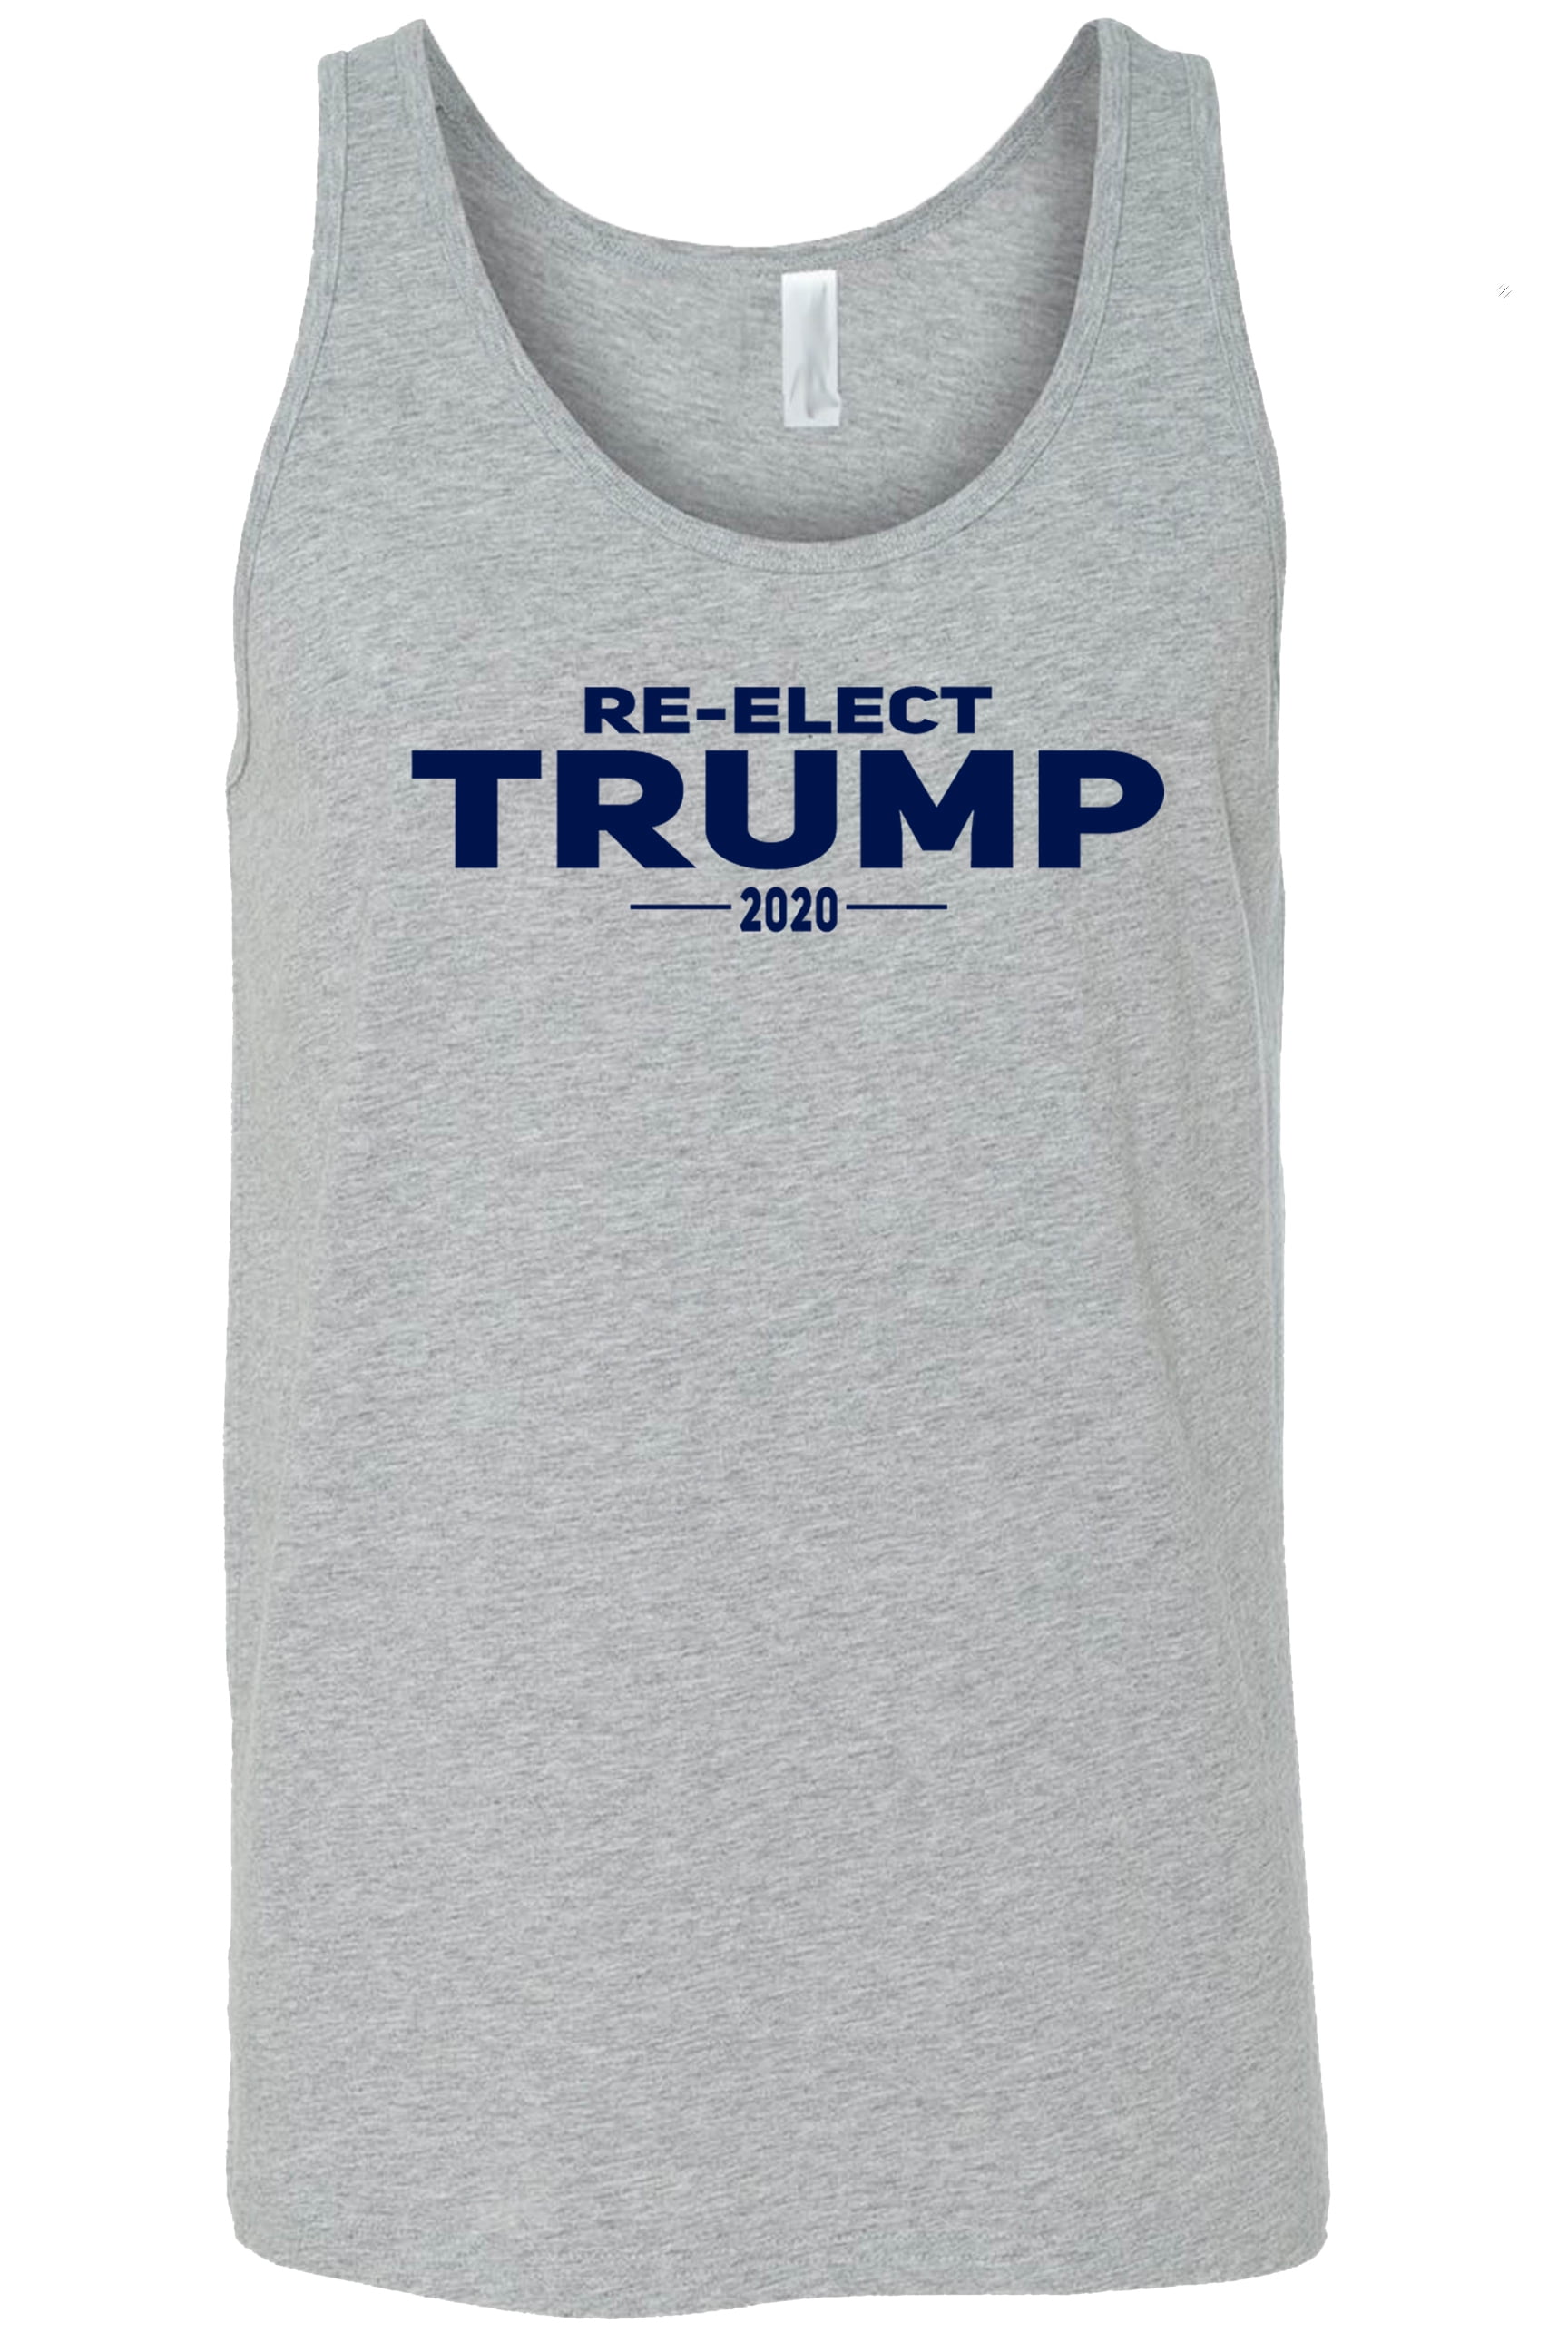 Shore Trendz - Unisex Re-Elect Trump 2020 MAGA Tank Top - Walmart.com ...